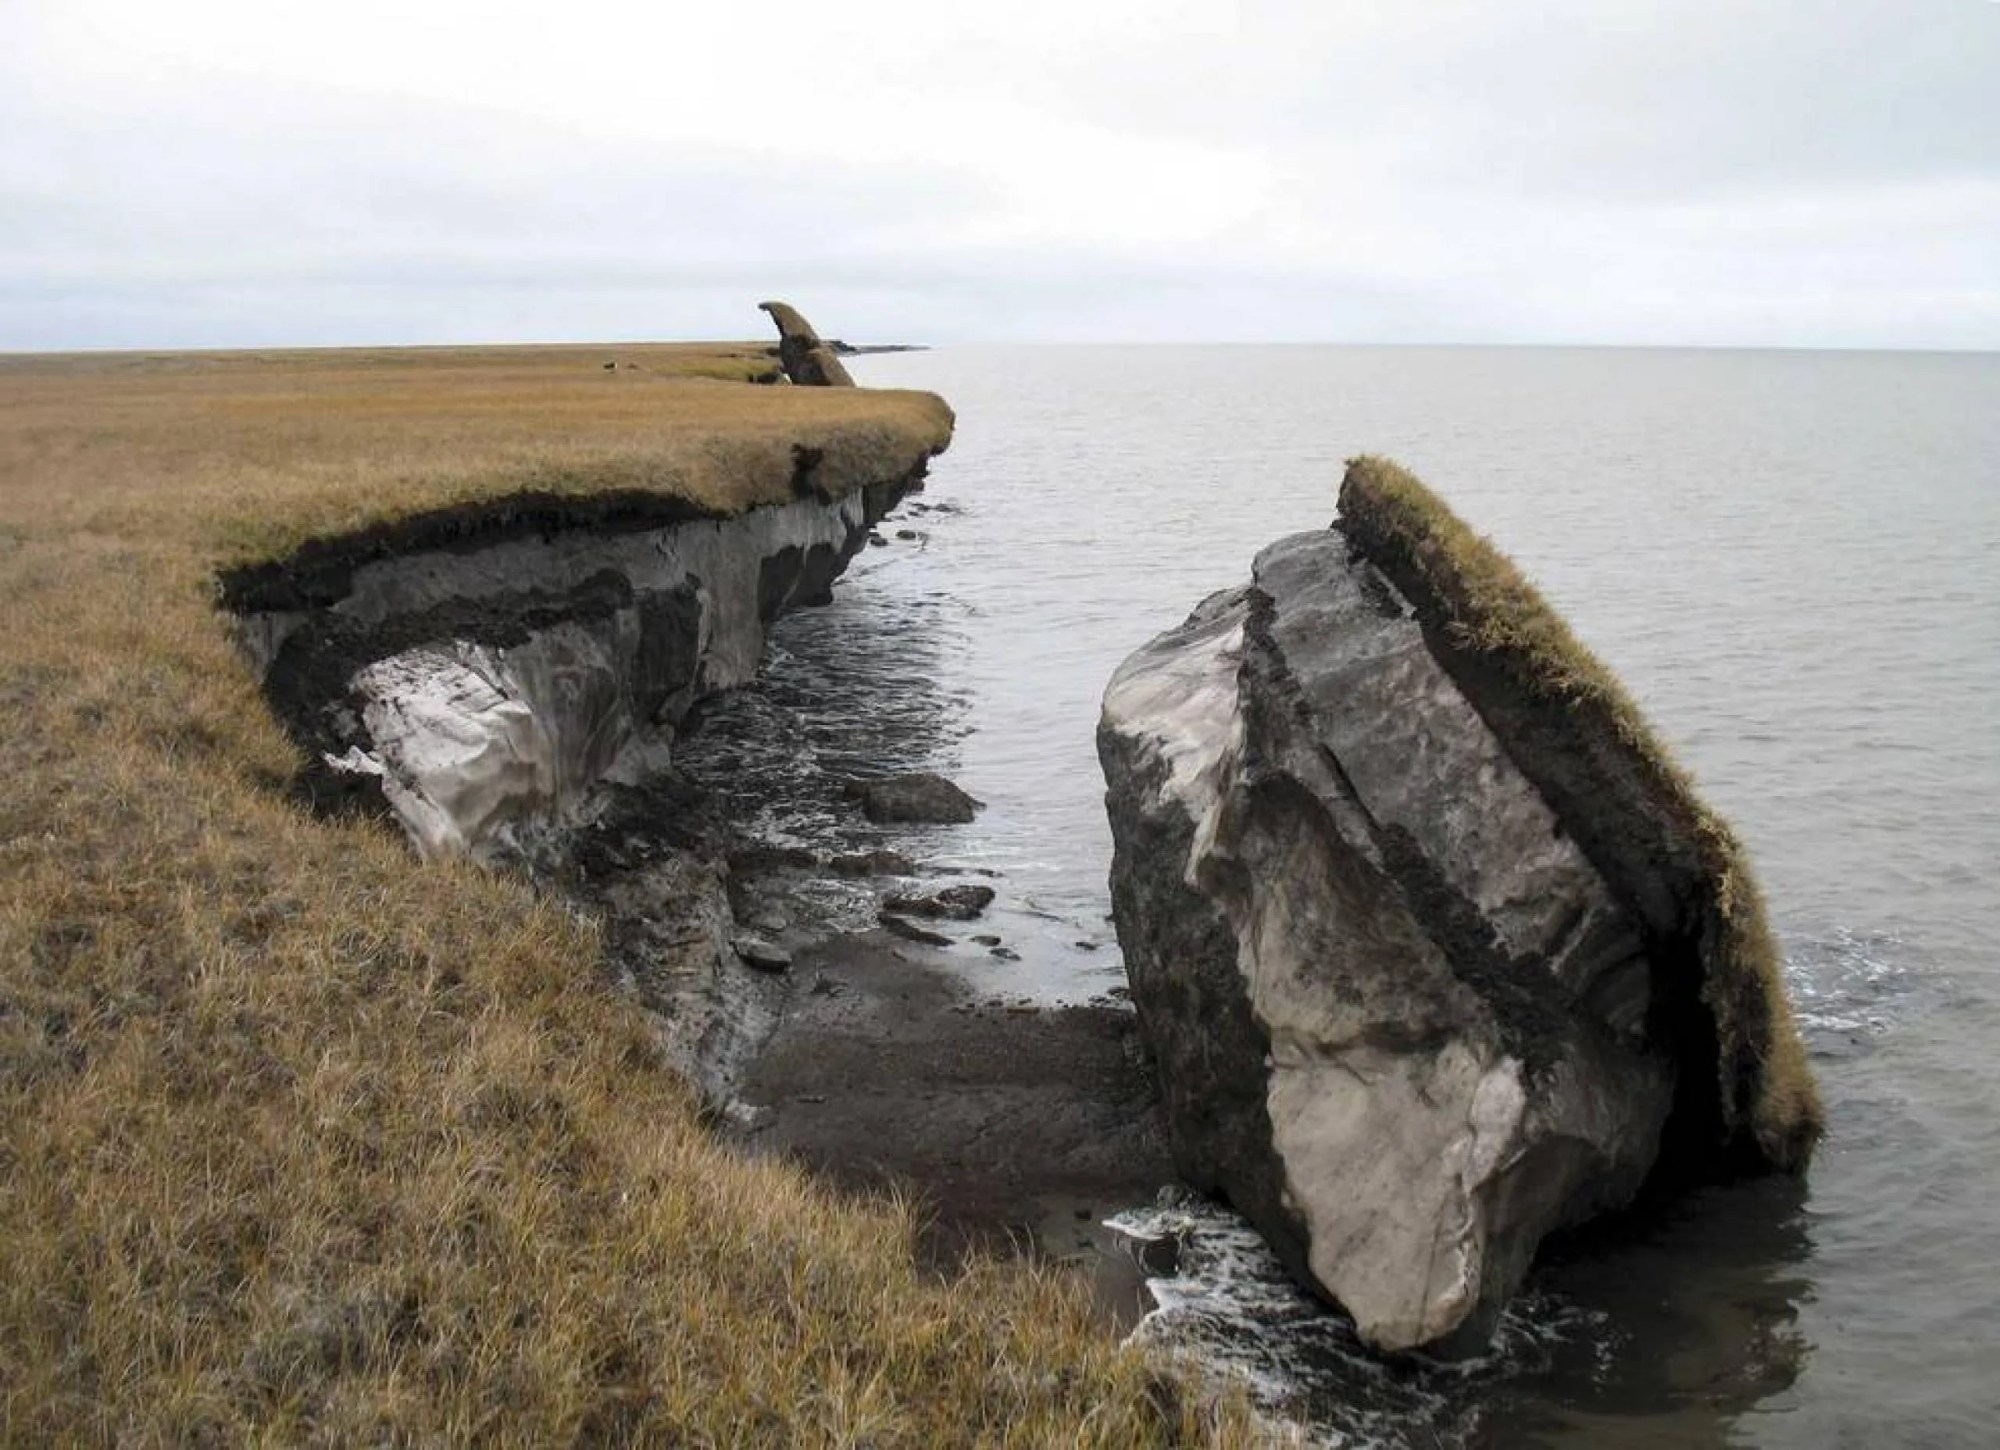 El deshielo del permafrost podría ocasionar la pérdida de terreno, como se ve en esta imagen donde parte del acantilado costero a lo largo de Drew Point, Alaska, se ha derrumbado en el océano. Créditos: Benjamin Jones, USGS